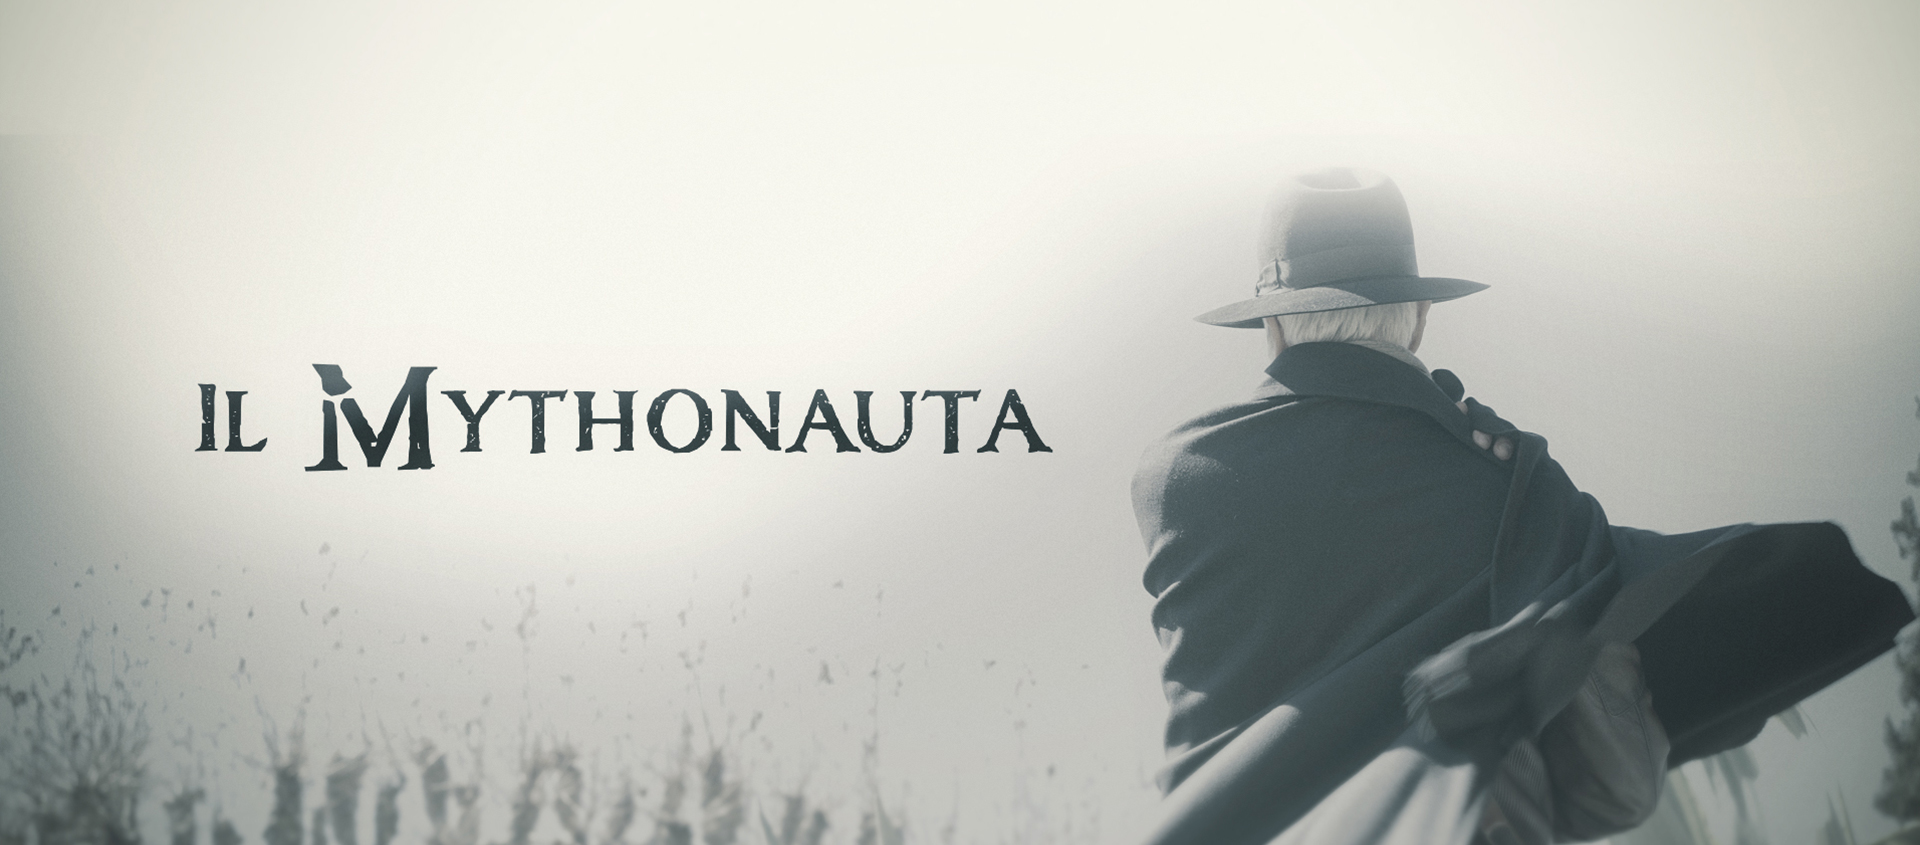 Mythonauta-header